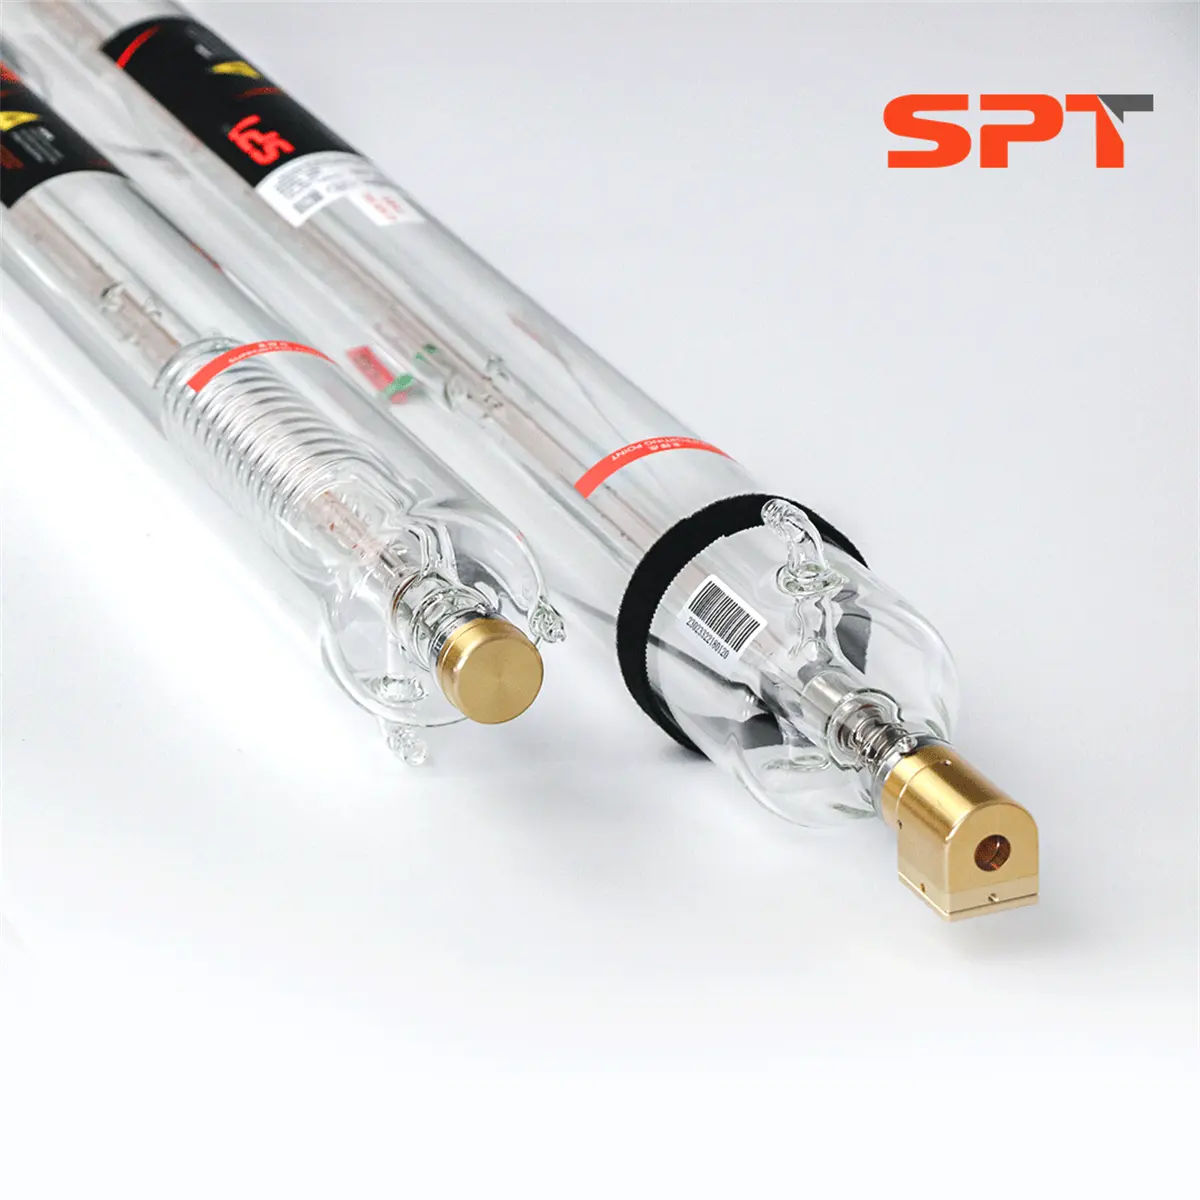 SPT Hochleistungs-100-W-CO2-Laserröhre mit rotem Zeiger zum Lasers ch neiden Nicht metallische Materialien wie Acryl/MDF